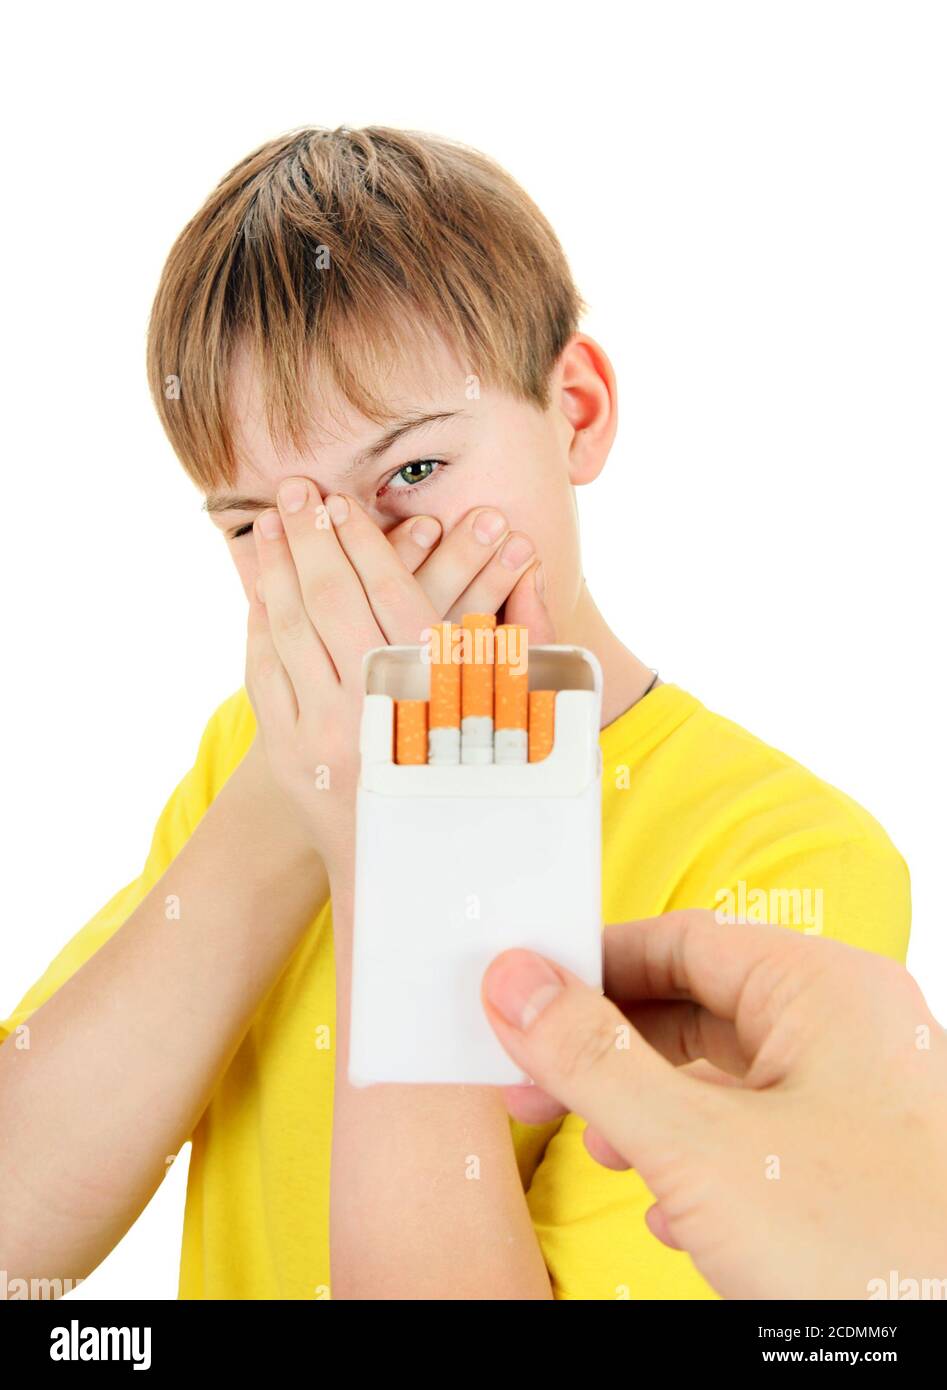 Kid refuse Cigarettes Stock Photo